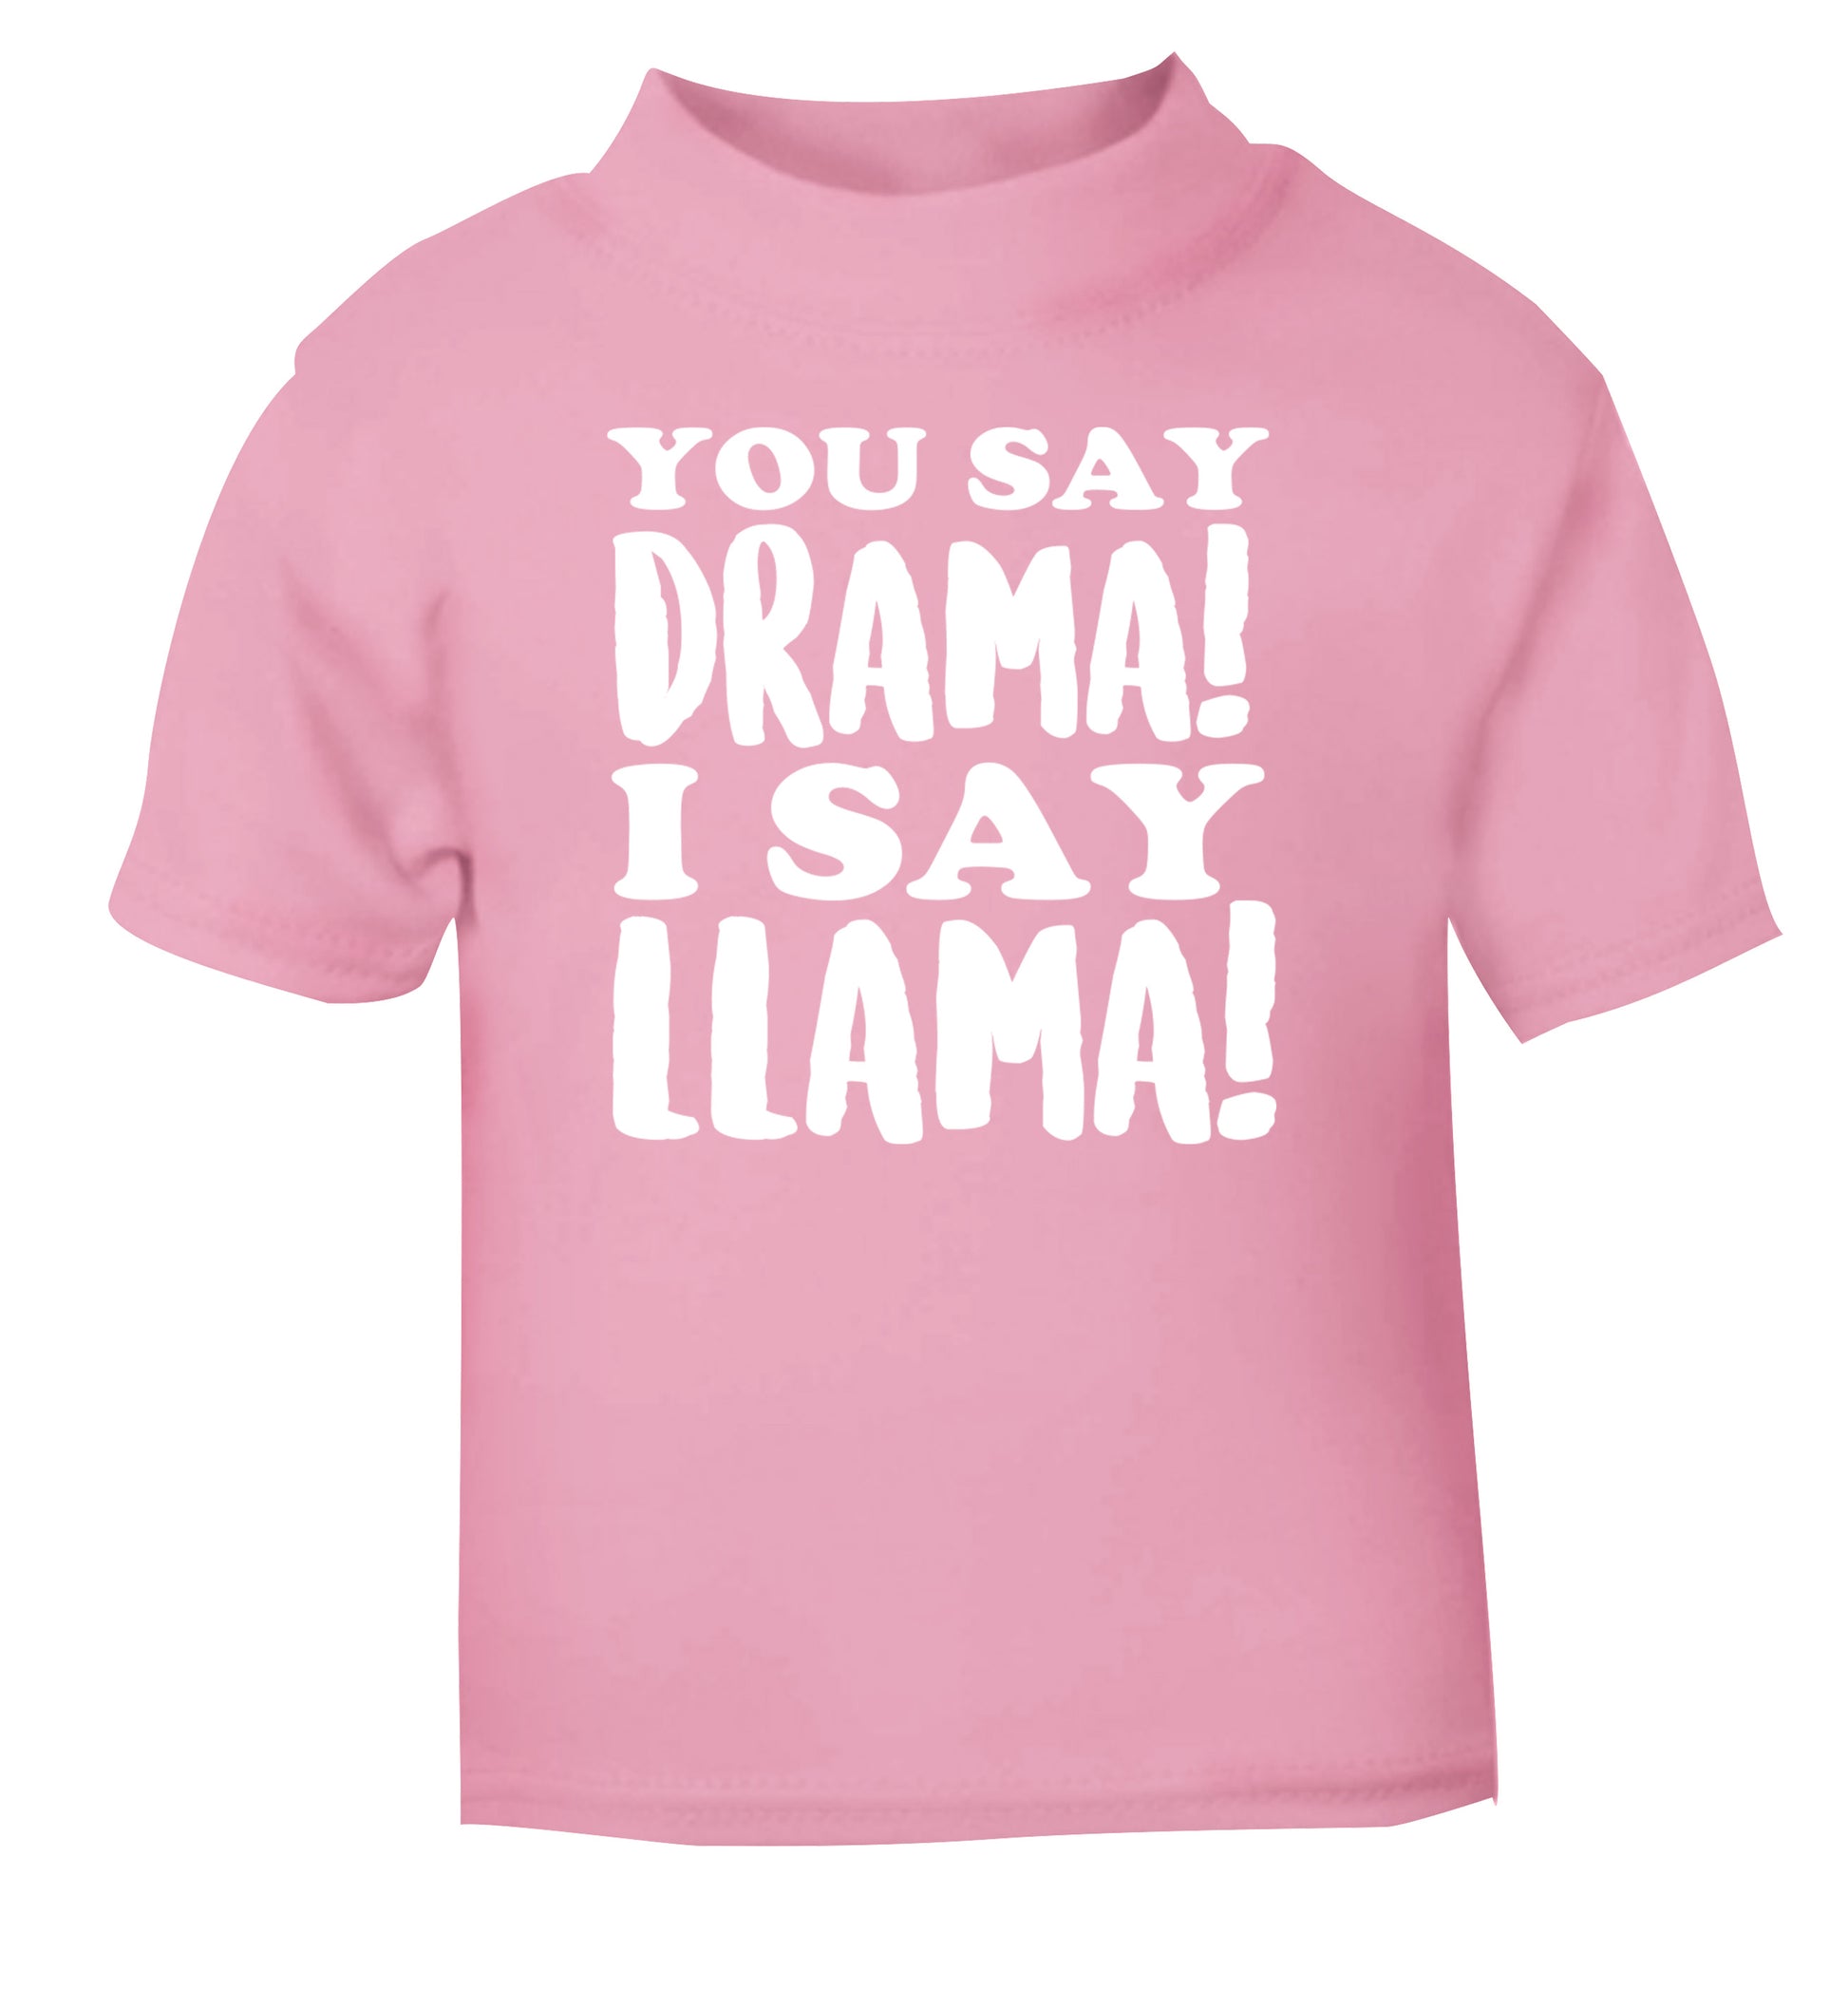 You say drama I say llama! light pink Baby Toddler Tshirt 2 Years